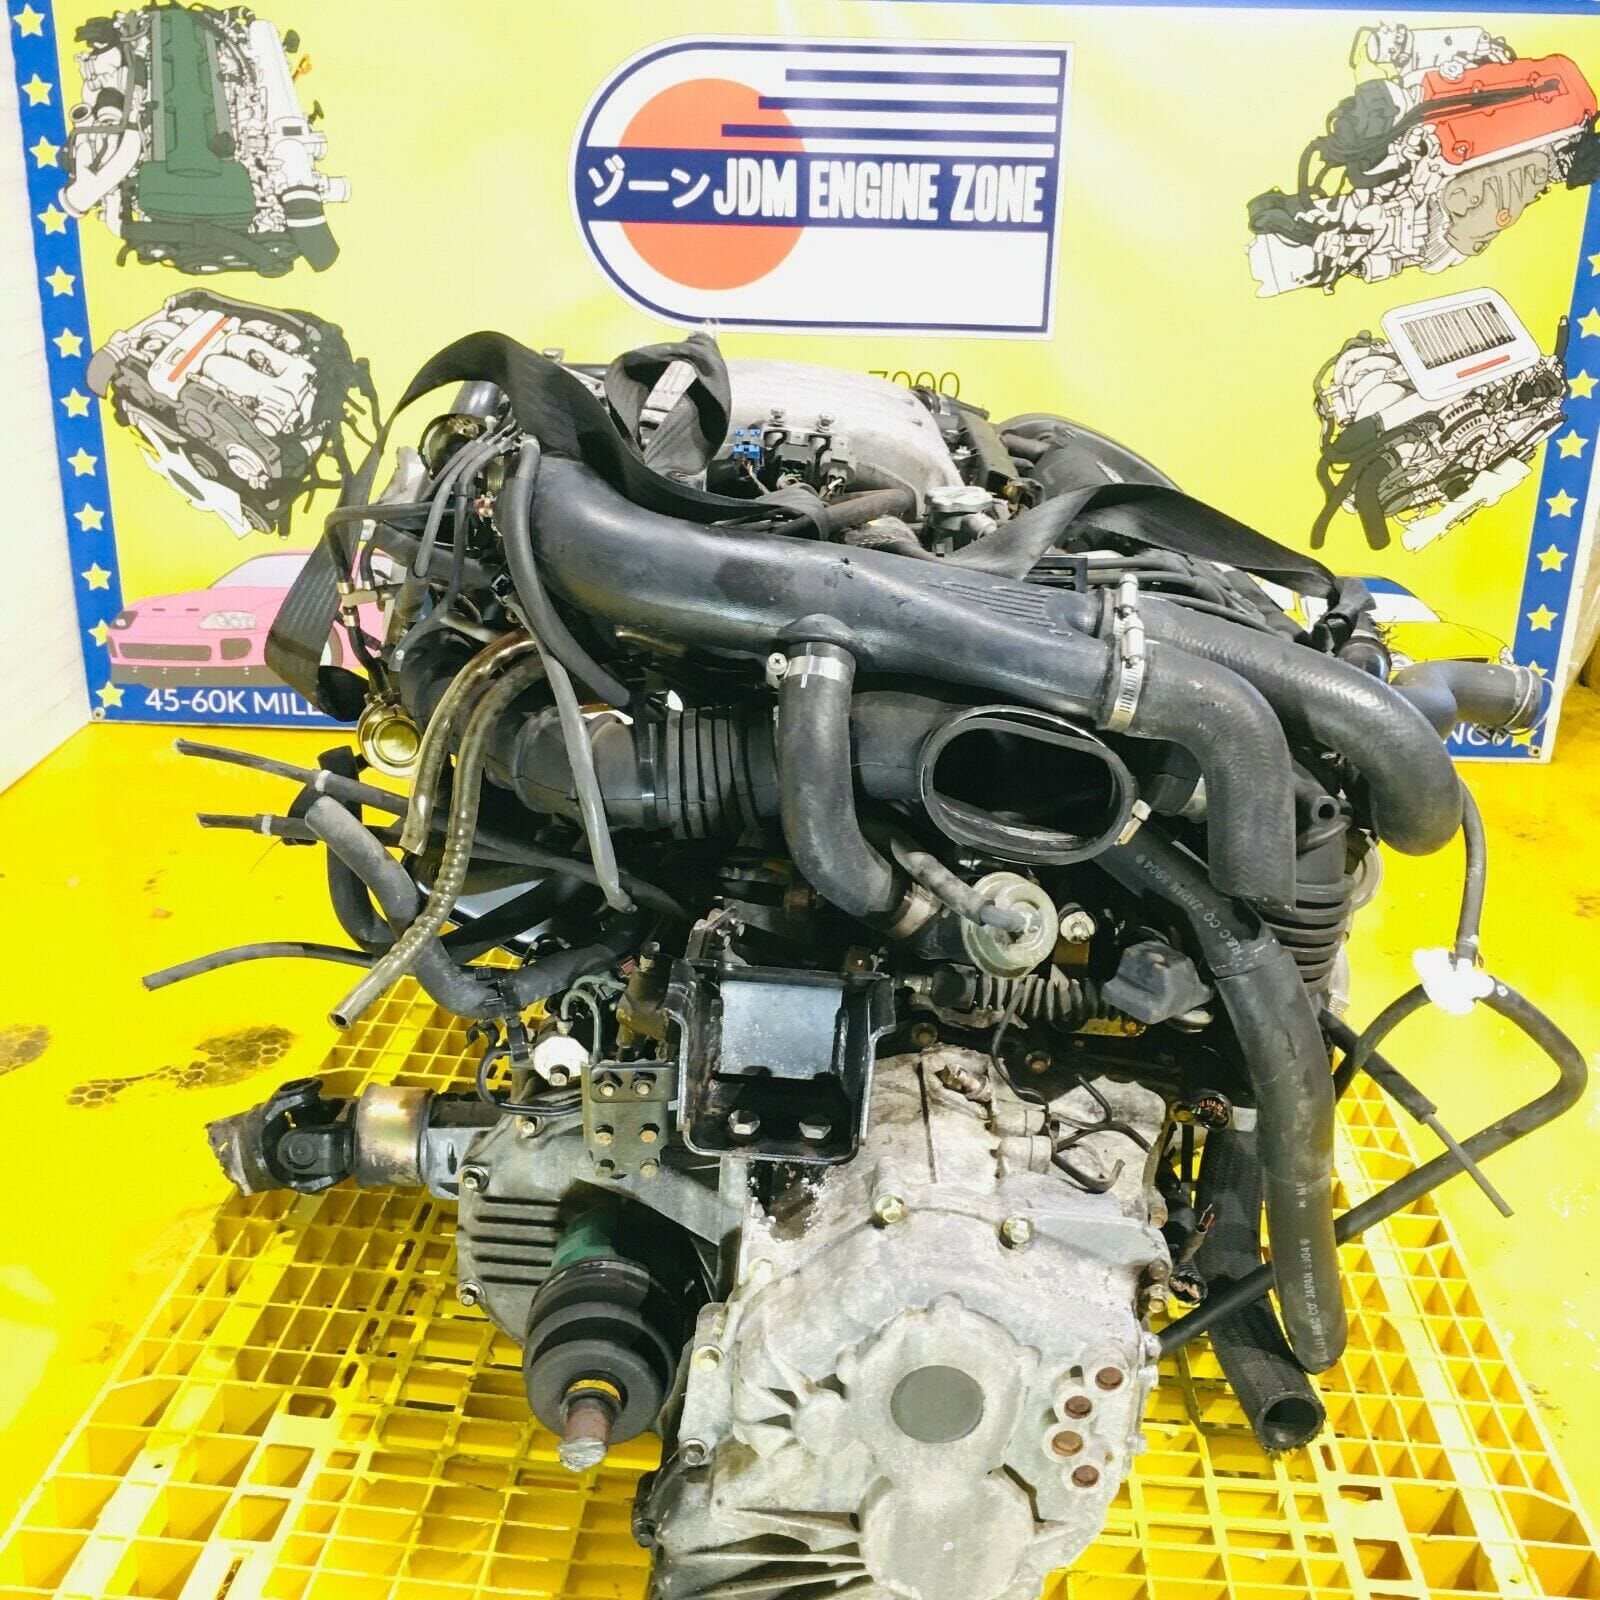 Mitsubishi 3000GT 1994-1997 Twin Turbo 3.0L 6 Speed JDM Engine Transmission Full Swap - 6G72TT